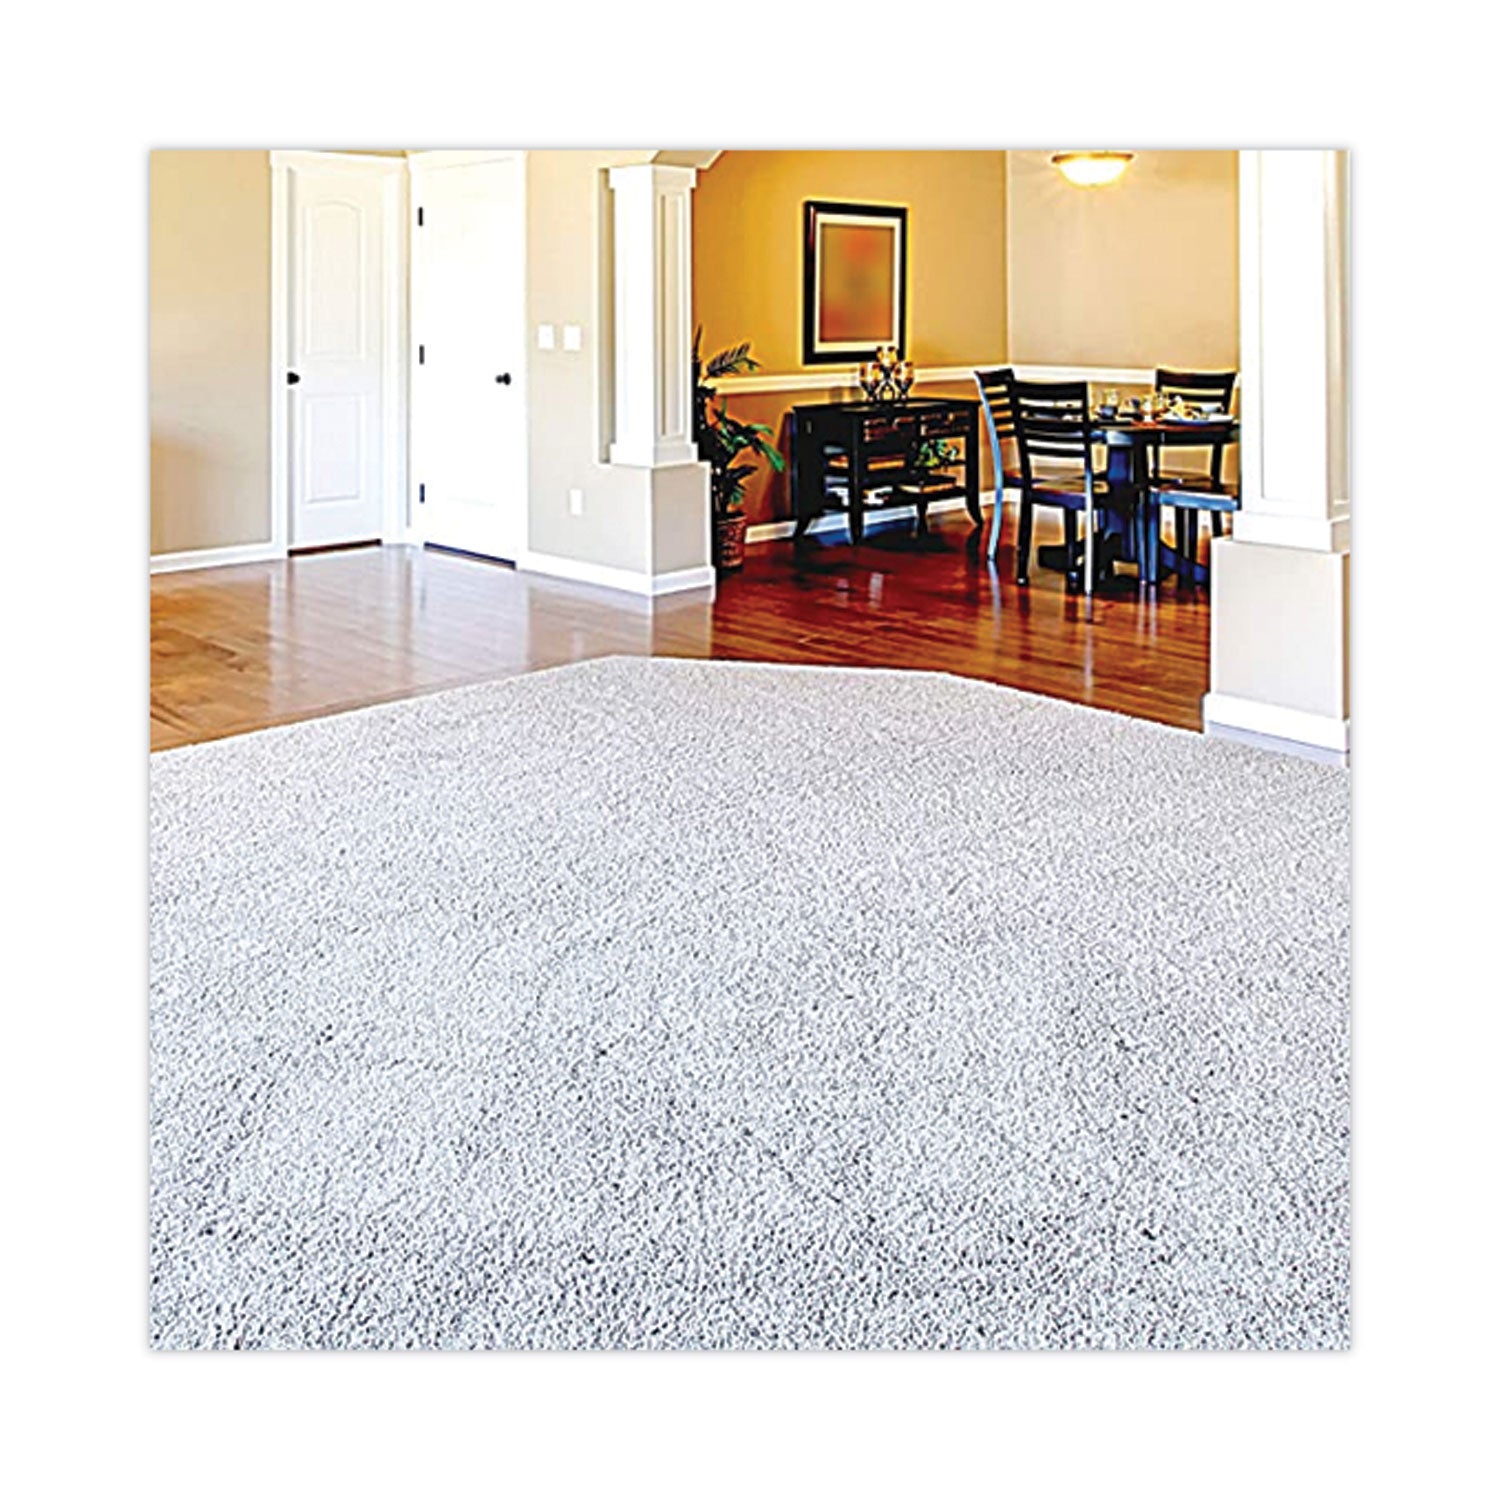 carpet-extraction-cleaner-lemongrass-1gal-bottle_zpp1041398ea - 2